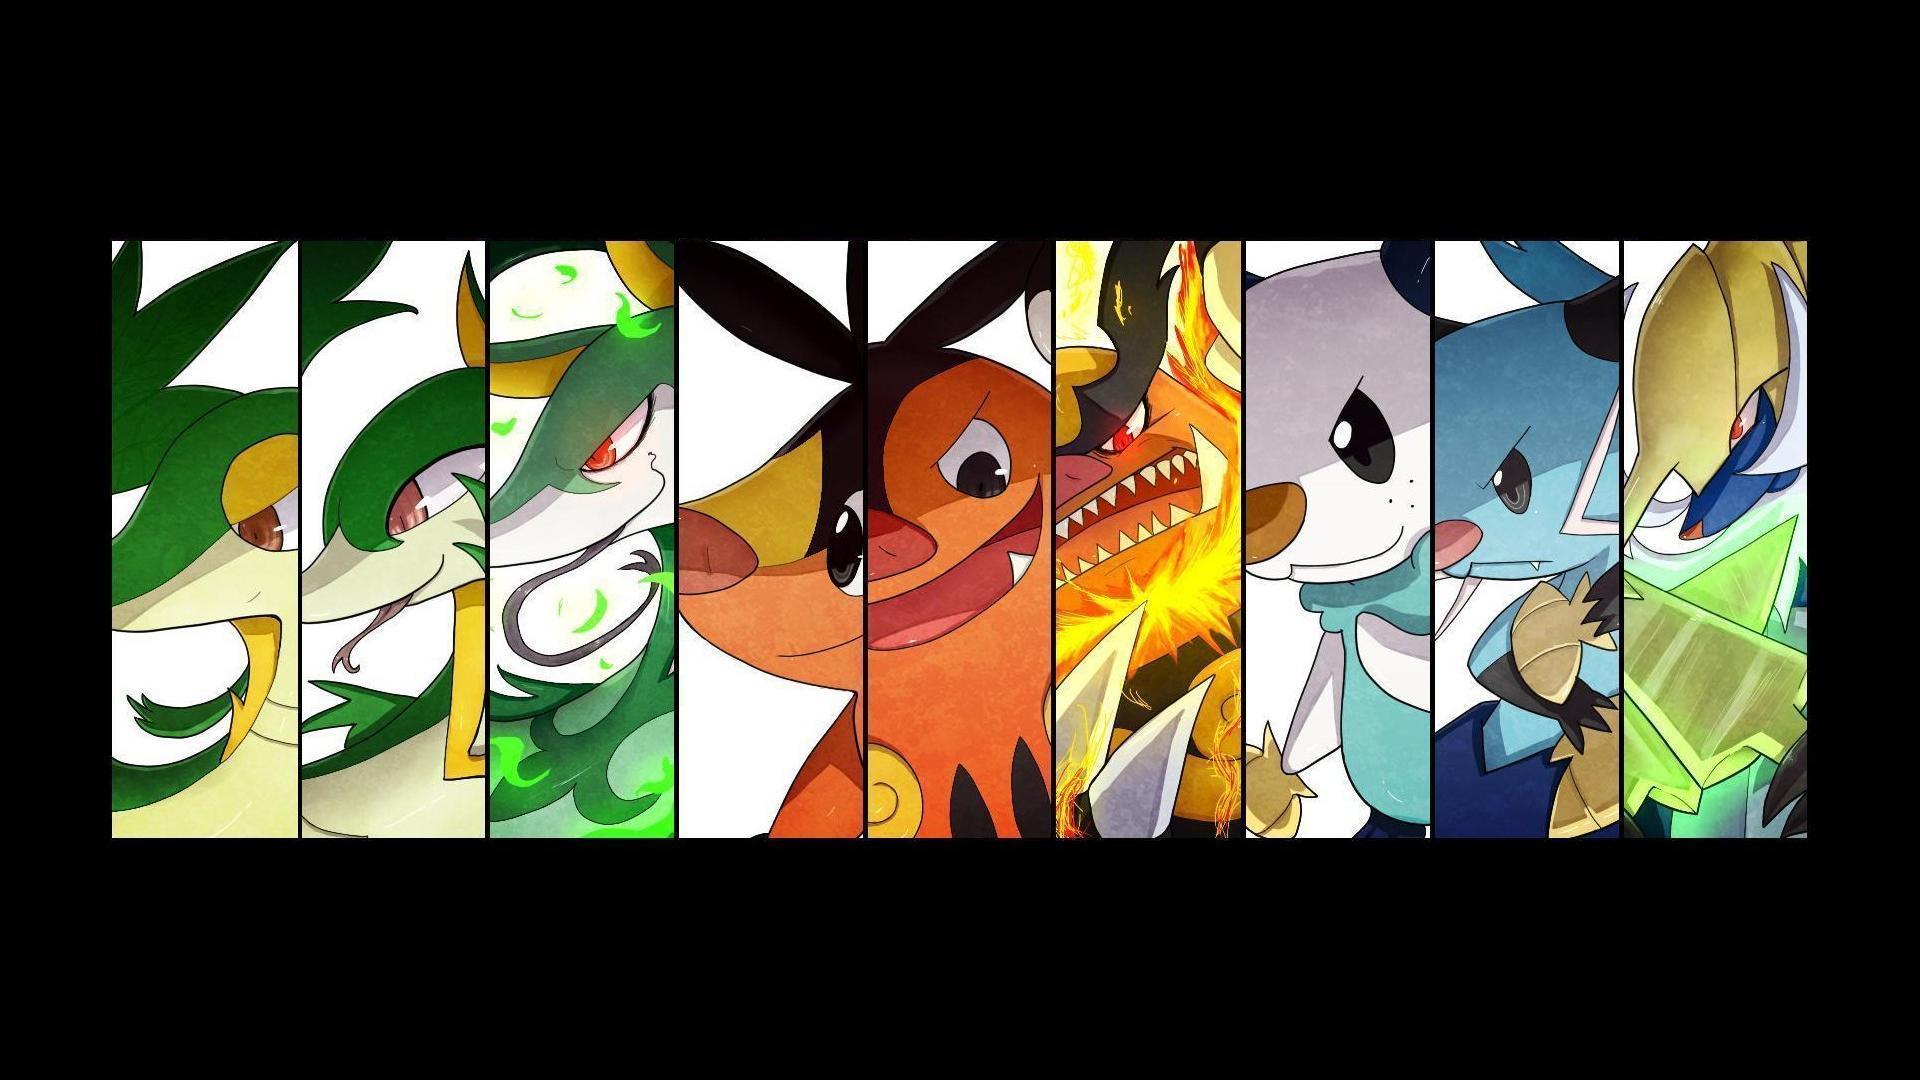 30 Oshawott Pokémon HD Wallpapers and Backgrounds